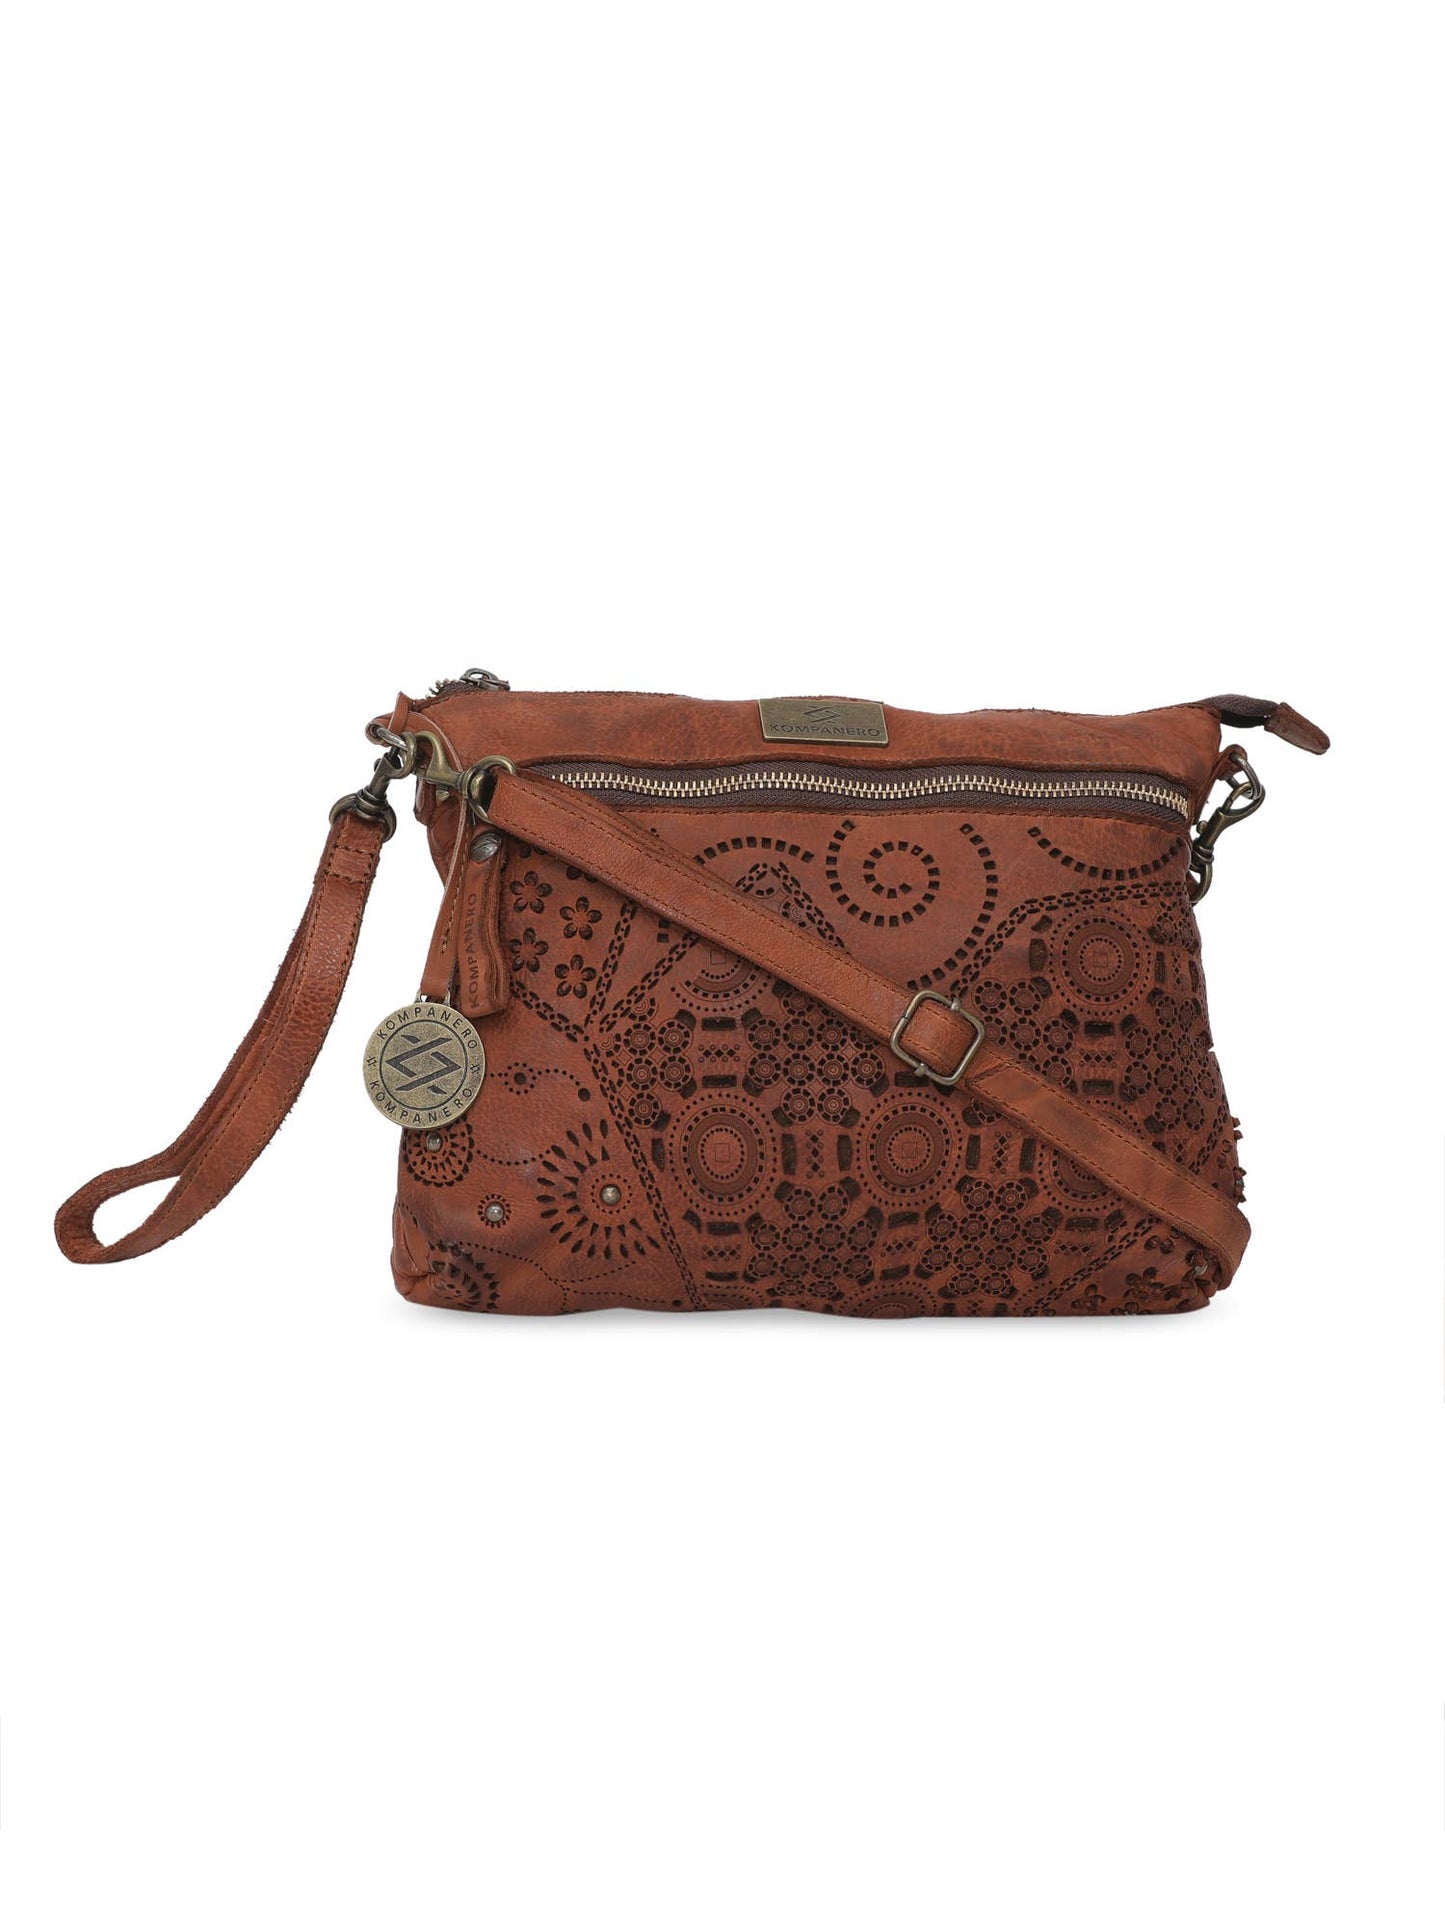 Genuine Leather Floral Design Handbag w/Sling - Kim - Cognac Front